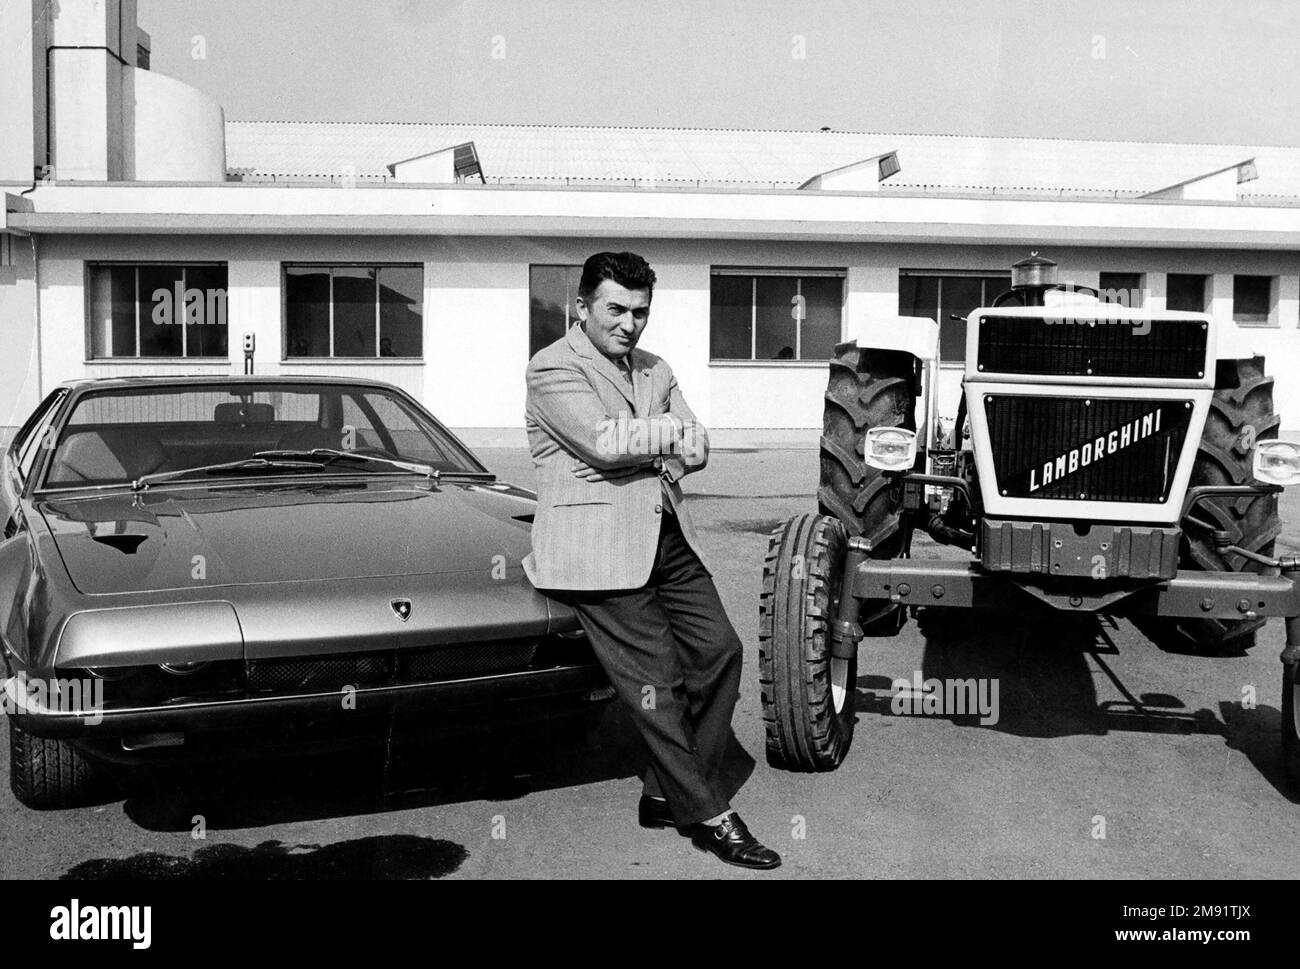 Ferruccio Lamborghini . Portrait of the Italian automobile designer, Ferruccio Lamborghini (1916-1993) standing between a Lamborghini car and tractor, c. 1970 Stock Photo